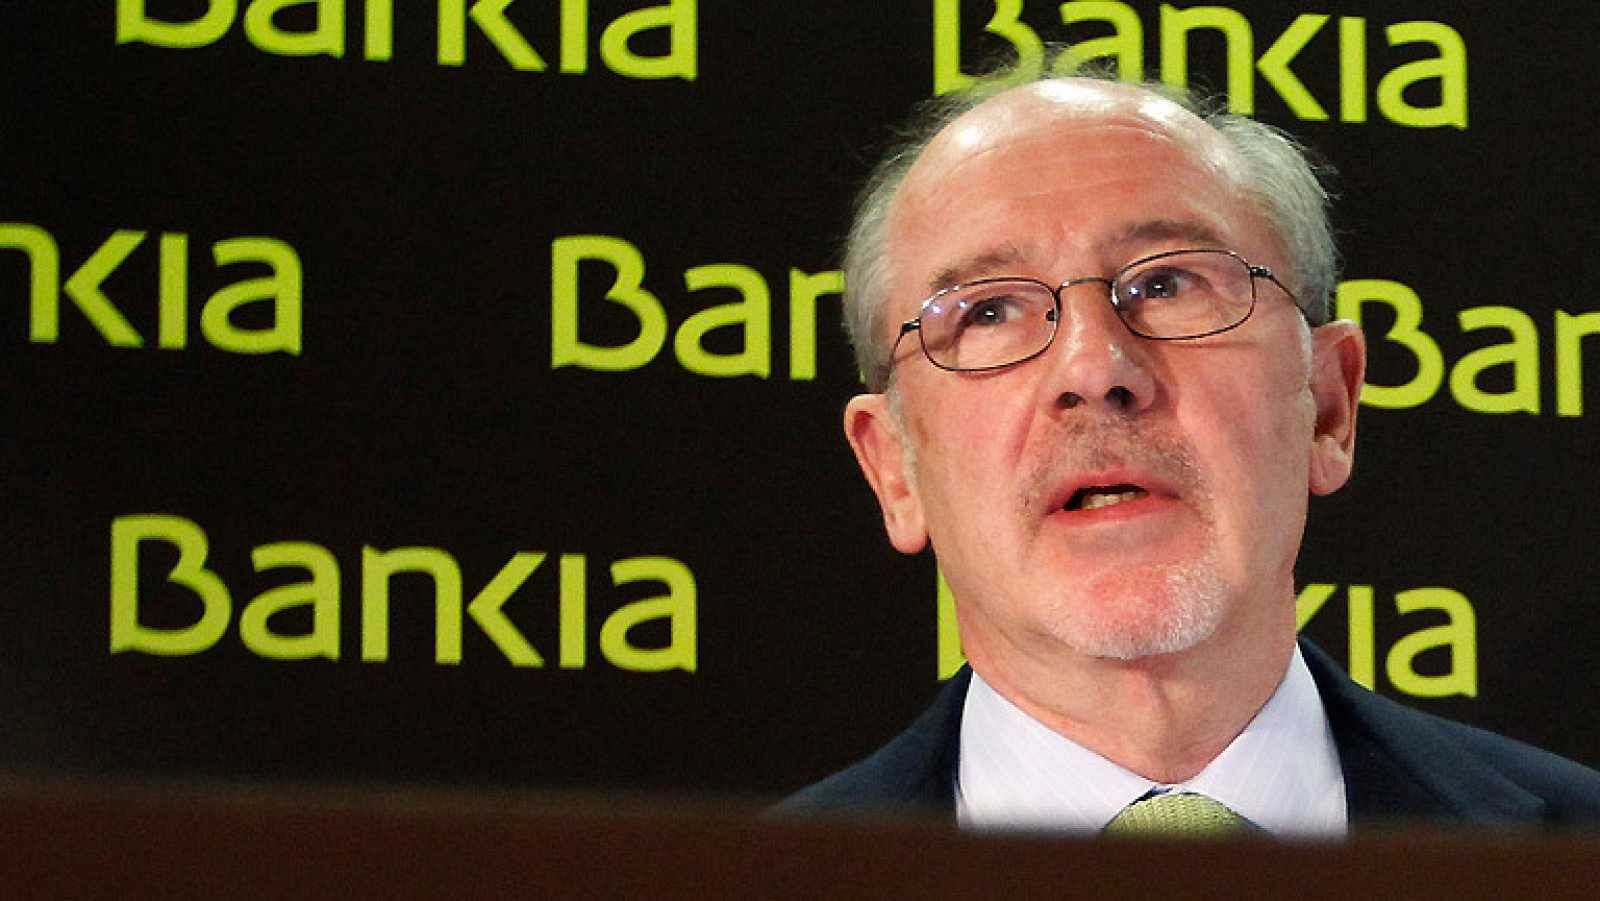 Reacciones políticas a la sentencia del 'caso Bankia'